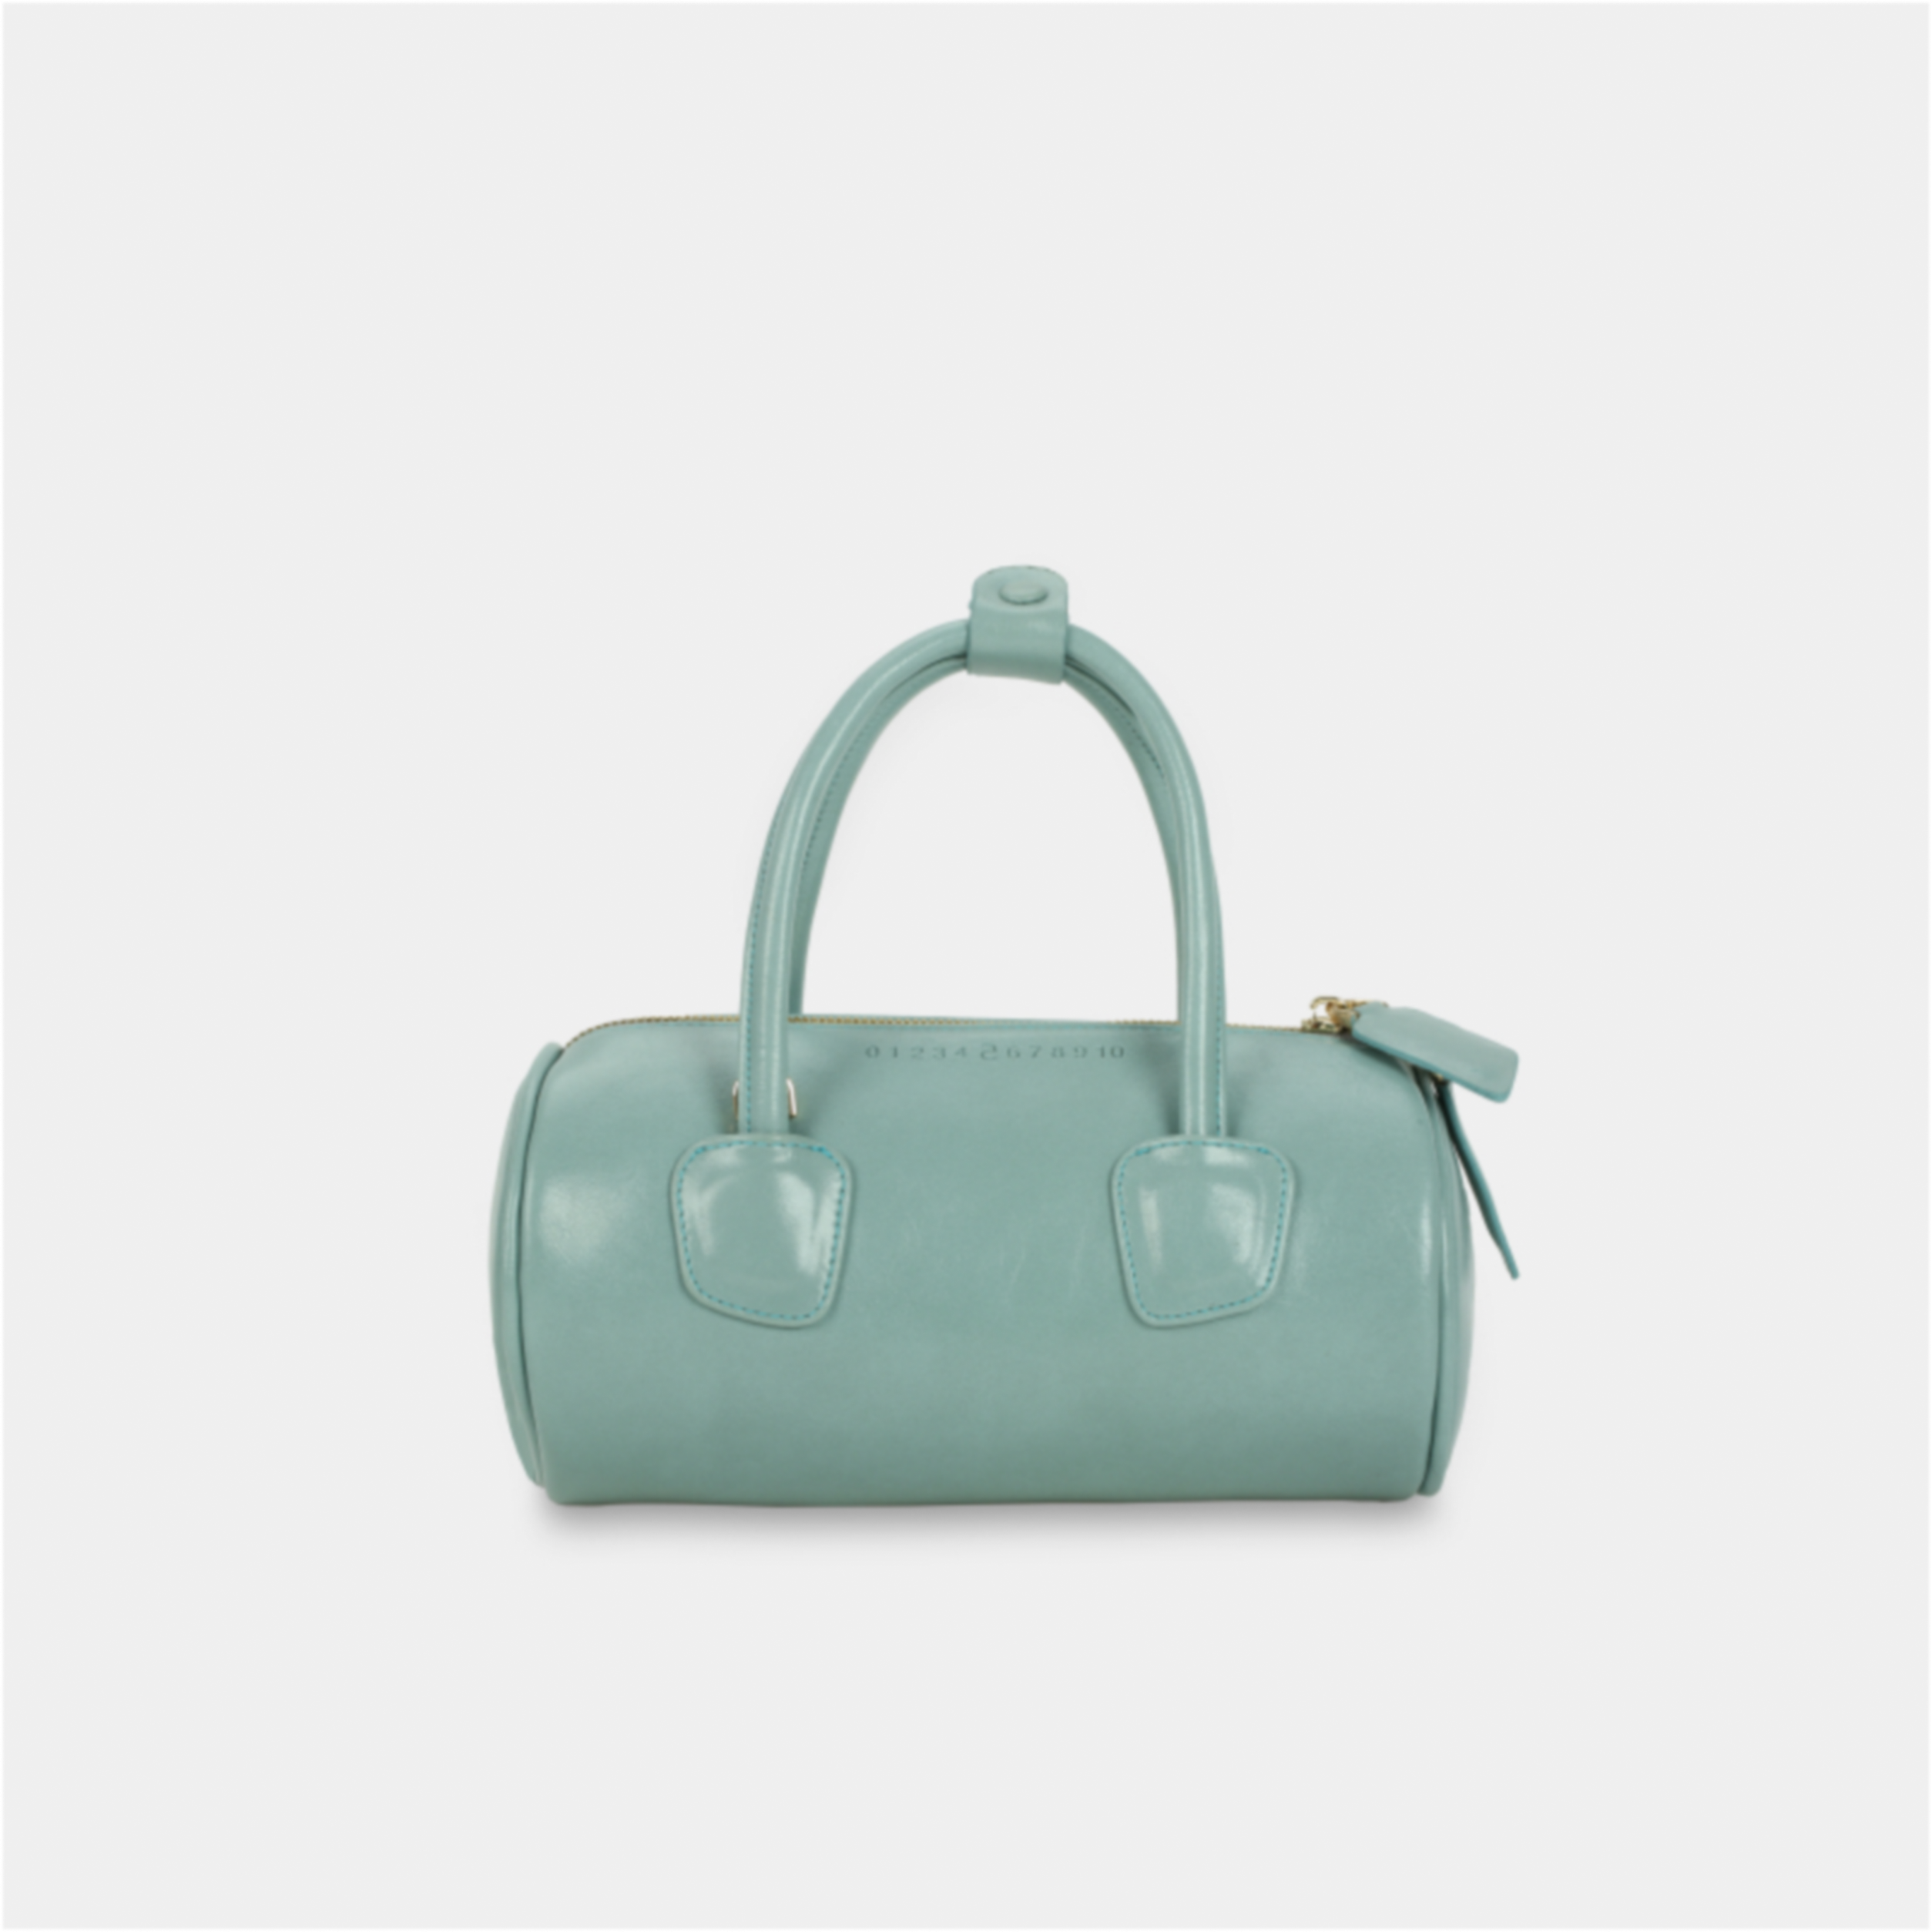 Túi xách ROLL màu xanh ngọc pastel